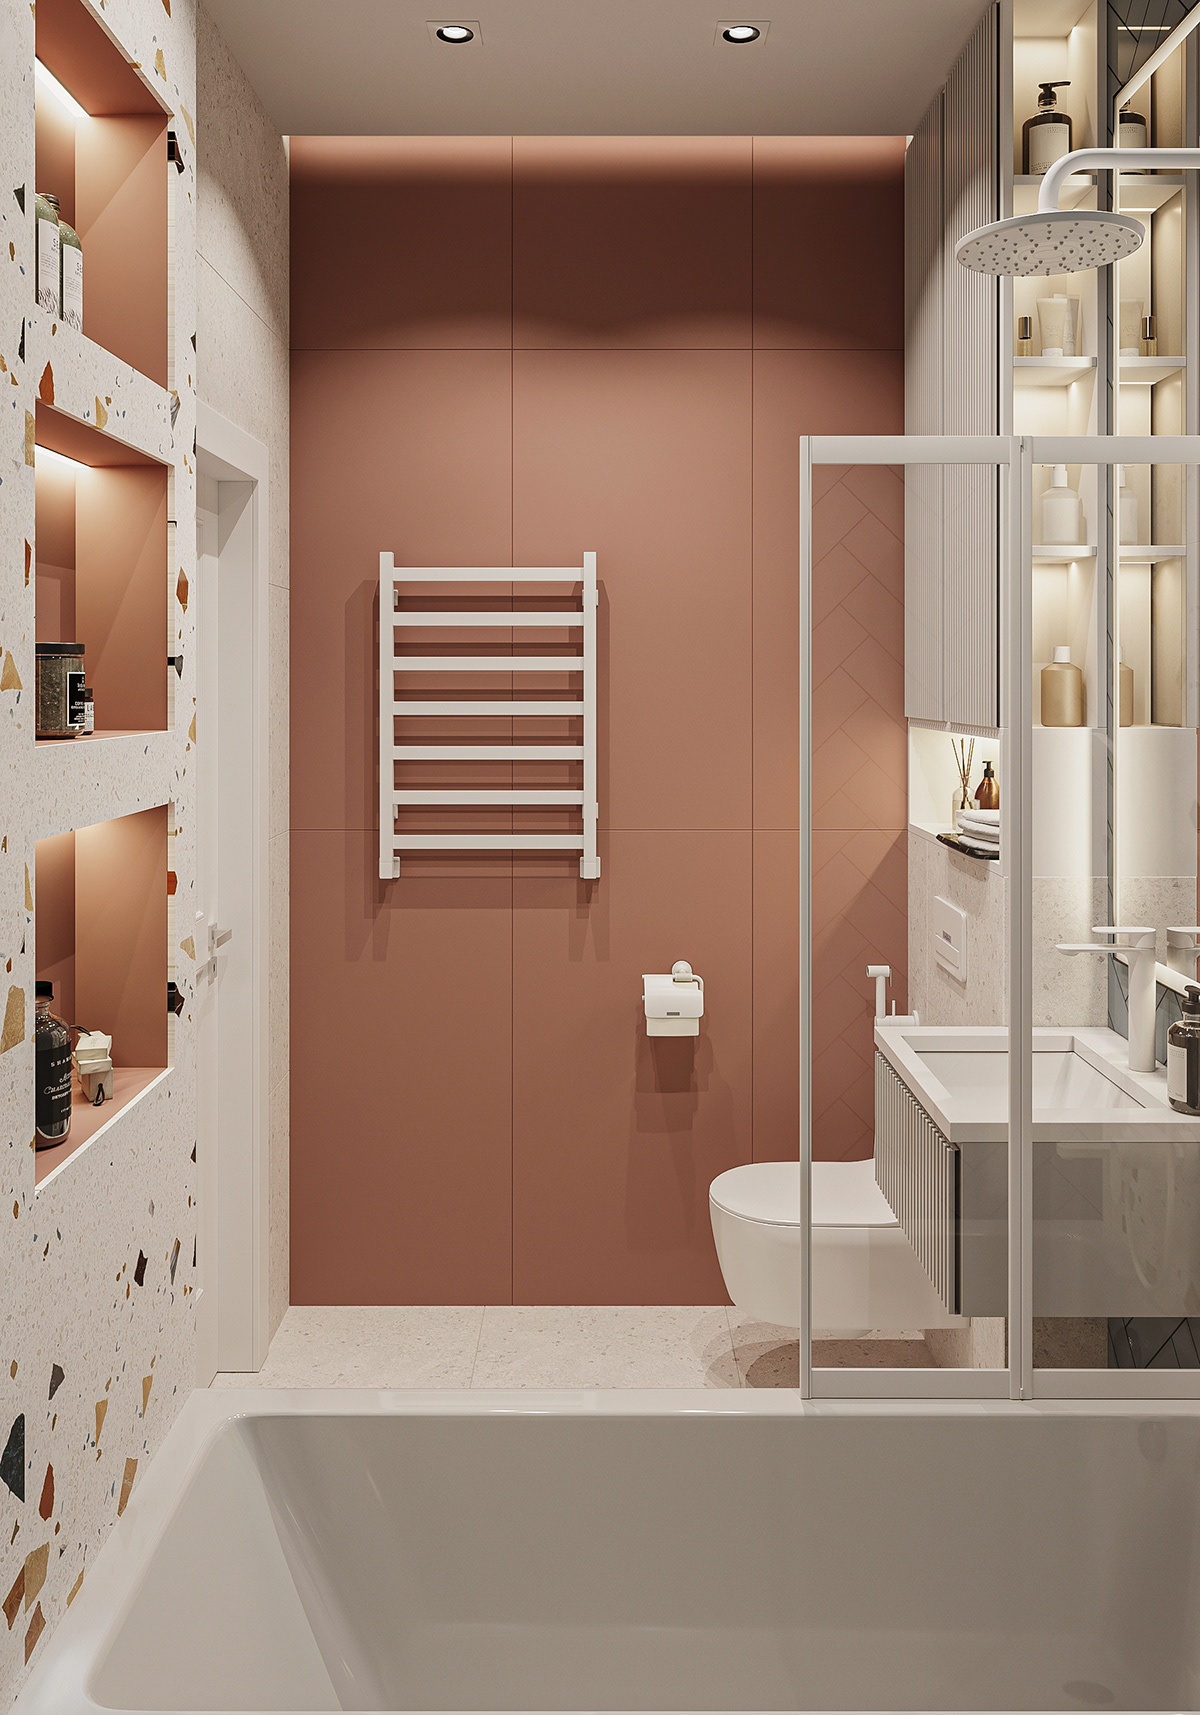 3ds max architecture bath bathroom Interior interior design  визуализация дизайн интерьера интерьер Санузел